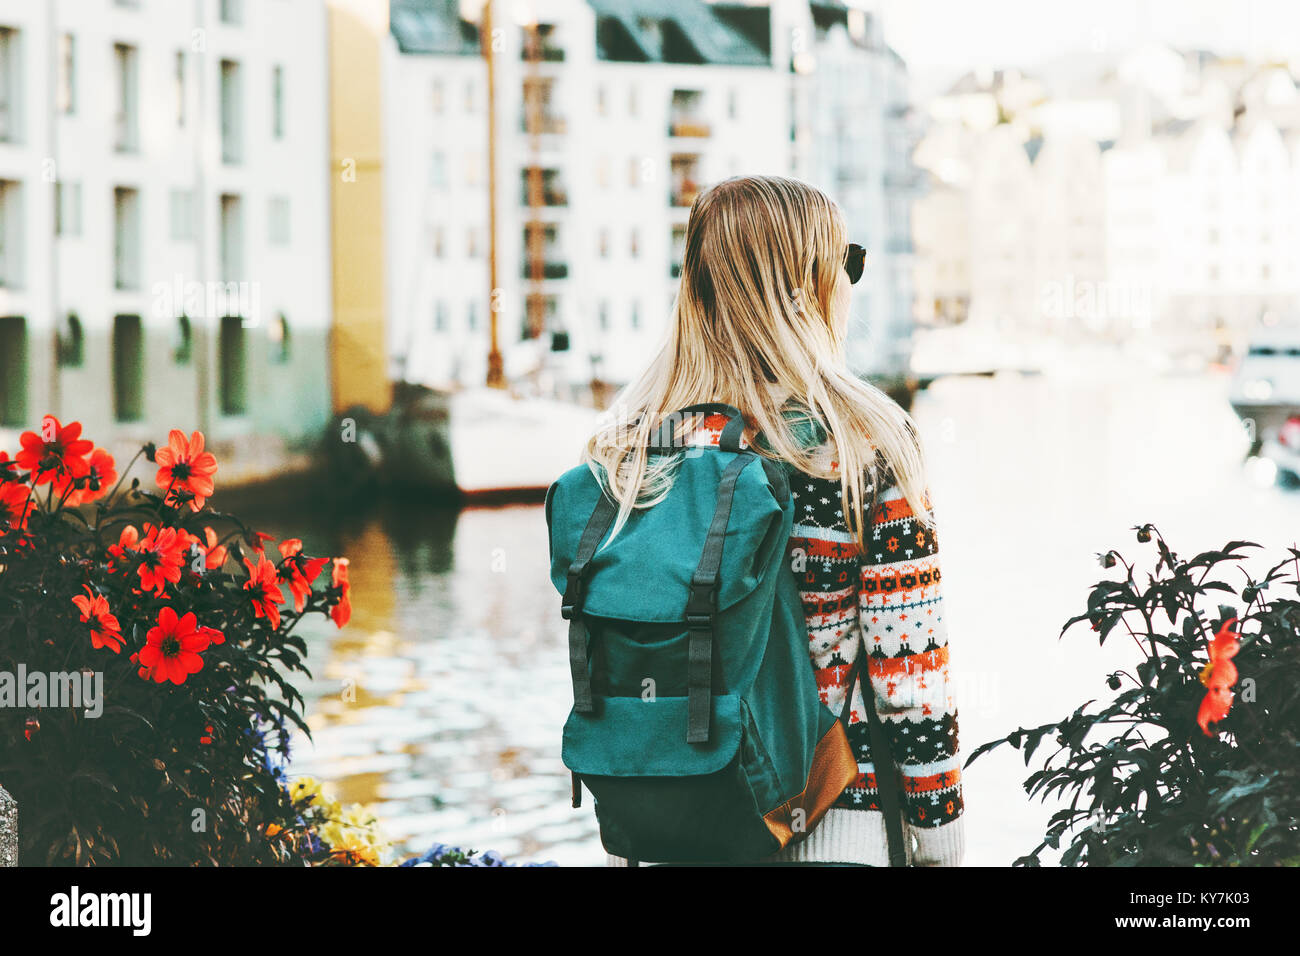 Frau mit Rucksack sightseeing Wandern in Norwegen Stadt Ferien Wochenende  Reisen Lifestyle Fashion outdoor Stockfotografie - Alamy